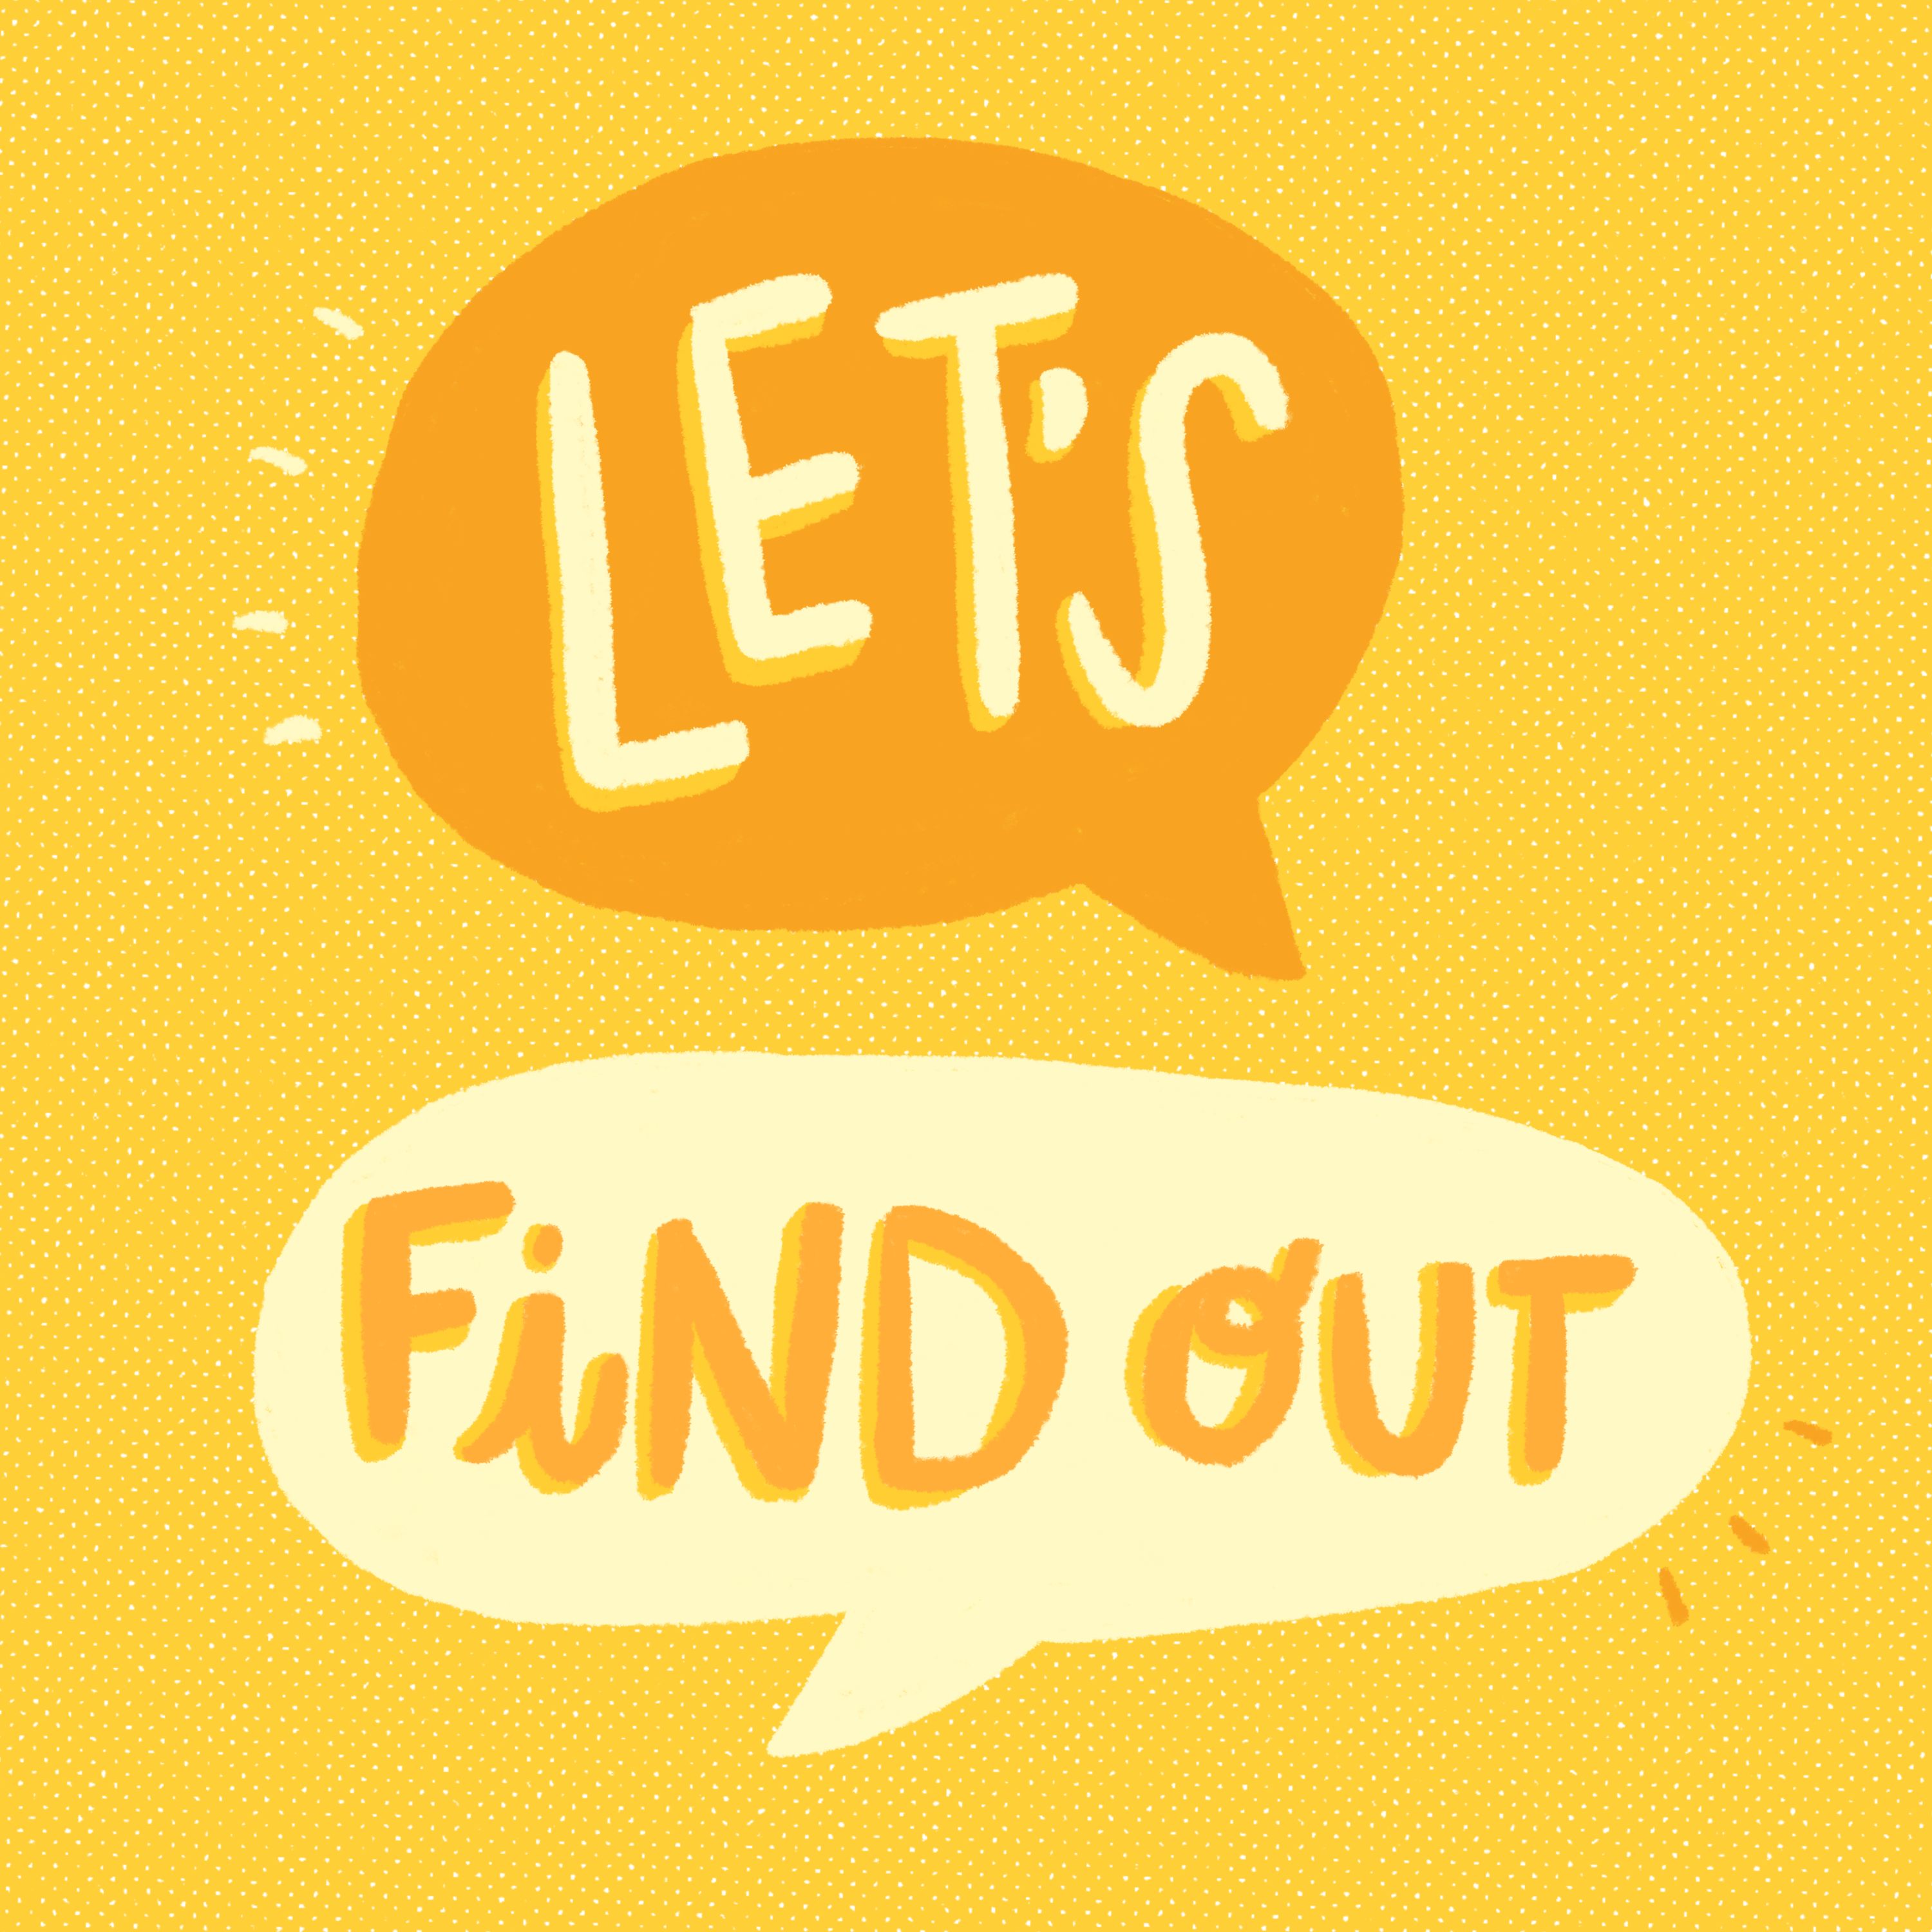 Find Out là gì và cấu trúc cụm từ Find Out trong câu Tiếng Anh?